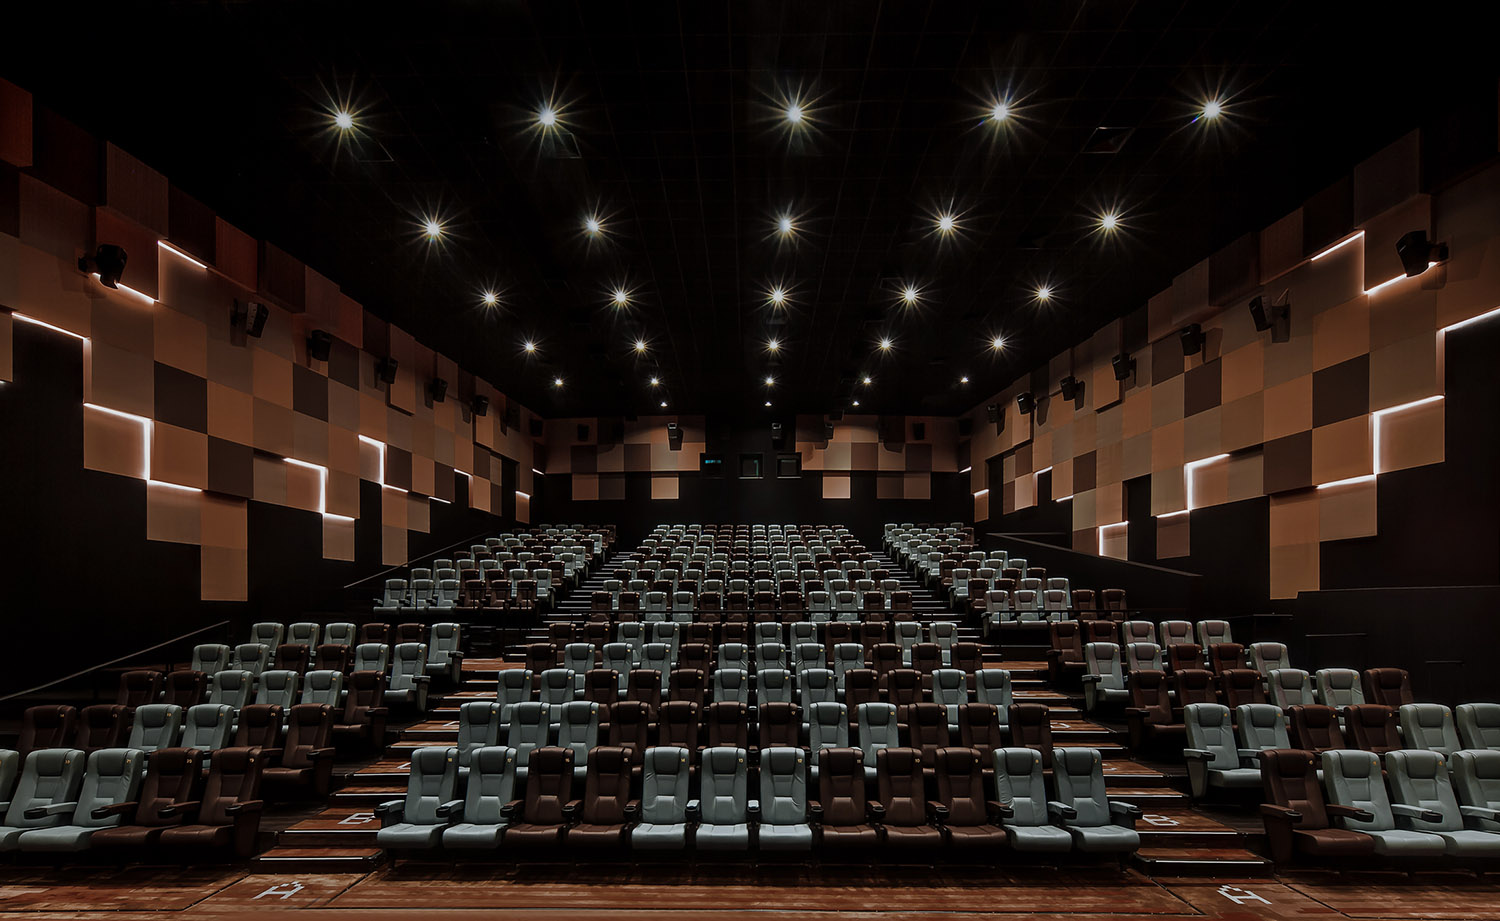 电影院设计,香港电影院设计,数码港MCL戏院,MCL戏院,MCL数码港戏院,香港MCL戏院,OFT设计,Oft,Oft Interiors Ltd,Oft设计公司,Oft设计作品,项目投稿